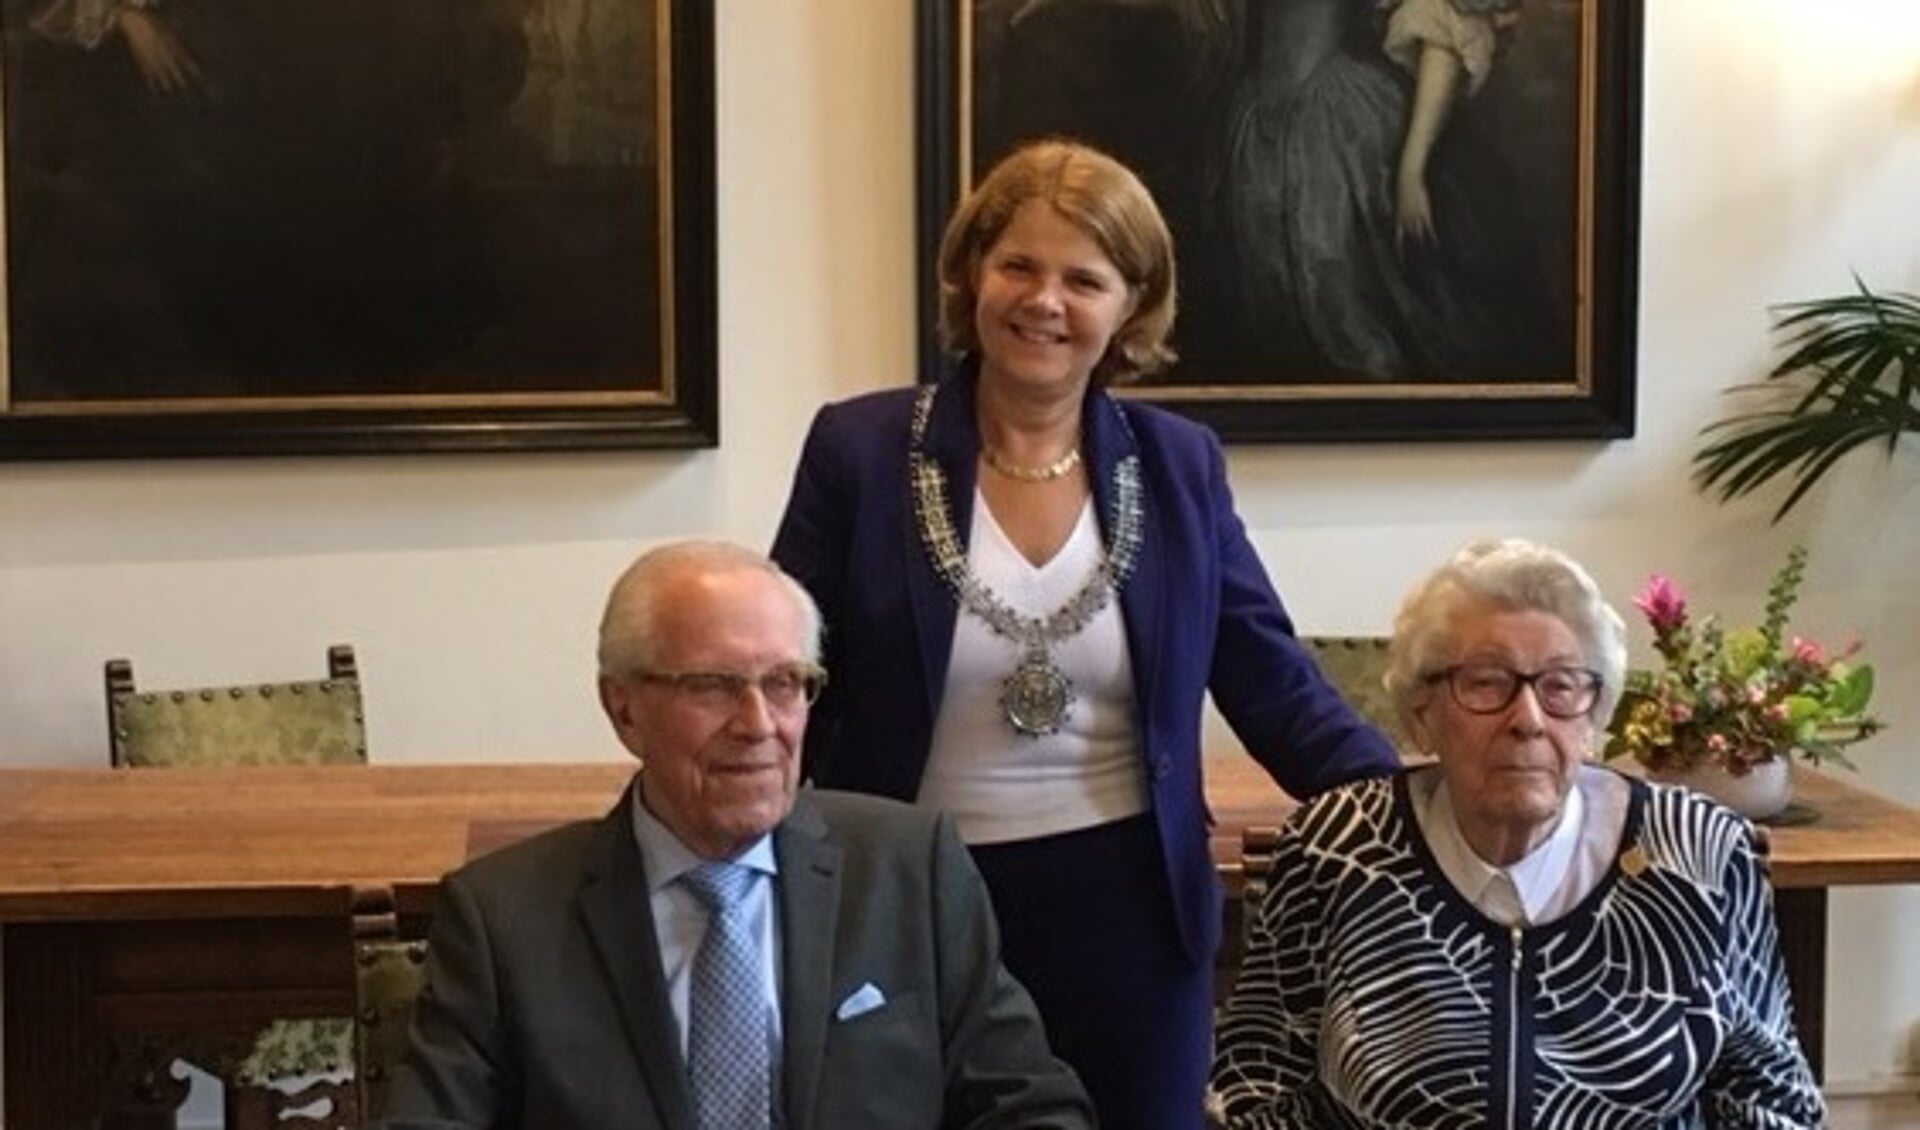 Op 16 september waren de heer en mevrouw Hoogeveen 65 jaar getrouwd. Burgemeester Marja van Bijsterveldt feliciteerde het echtpaar.